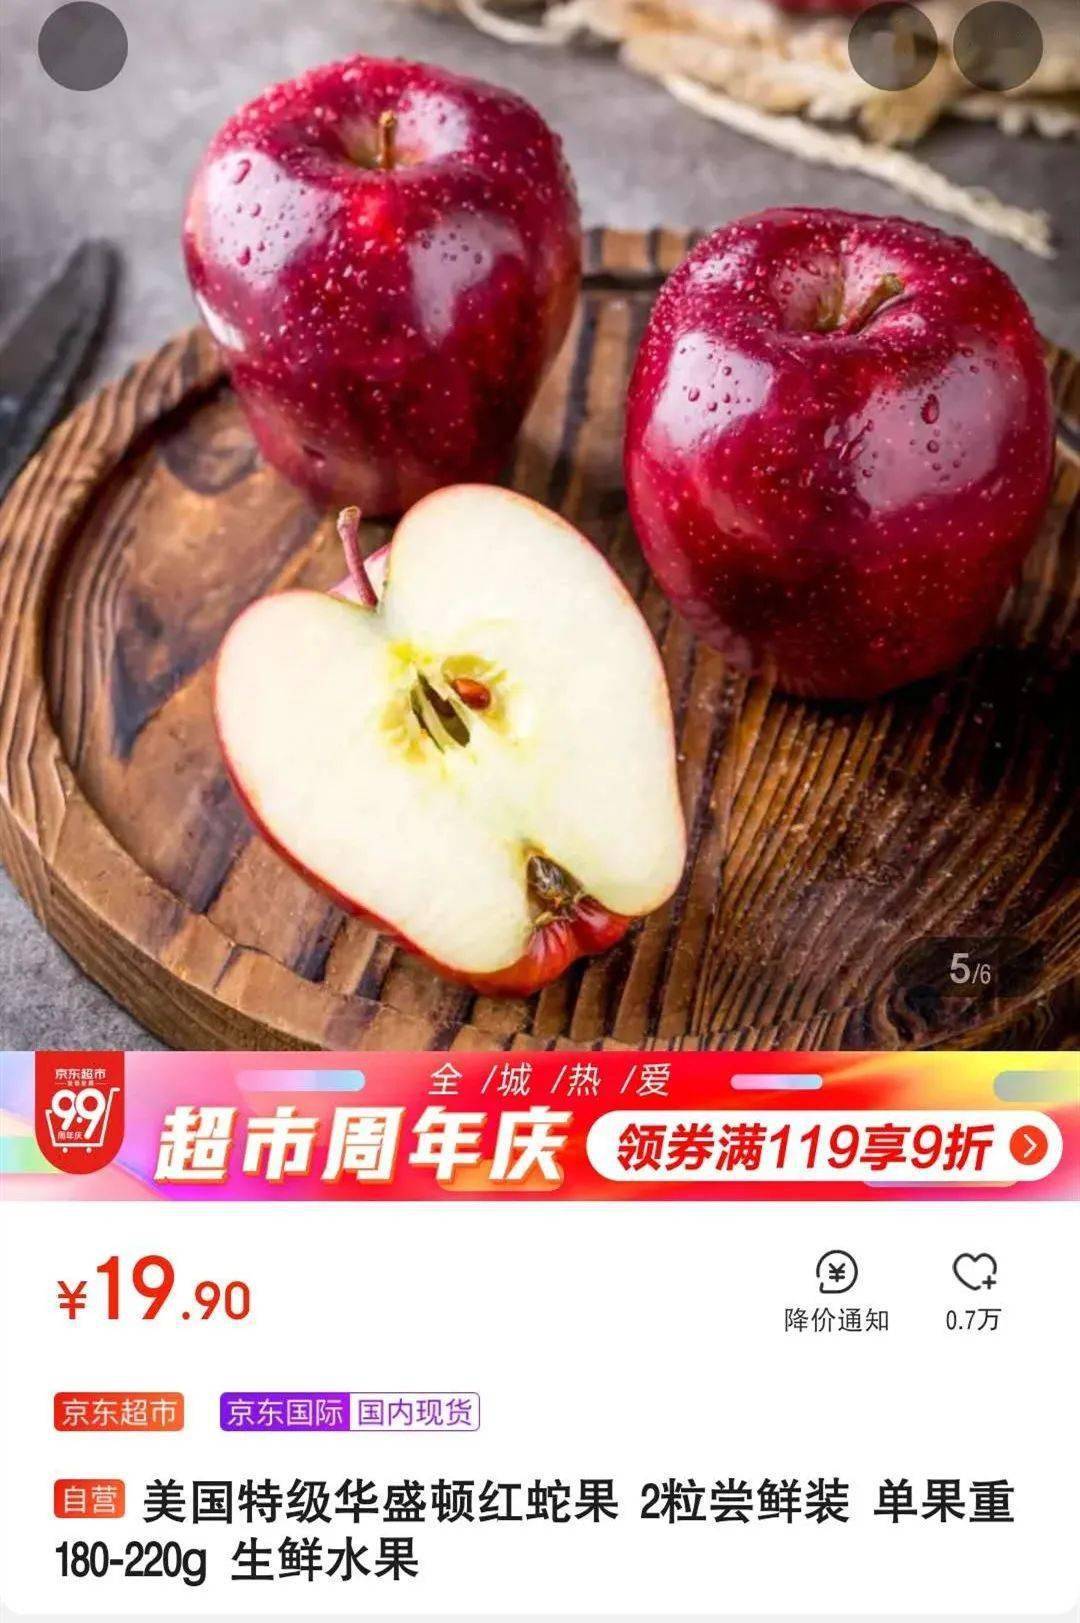 1个蛇果≈15个花花牛苹果价格价格更实惠,味道新鲜国产的花花牛苹果